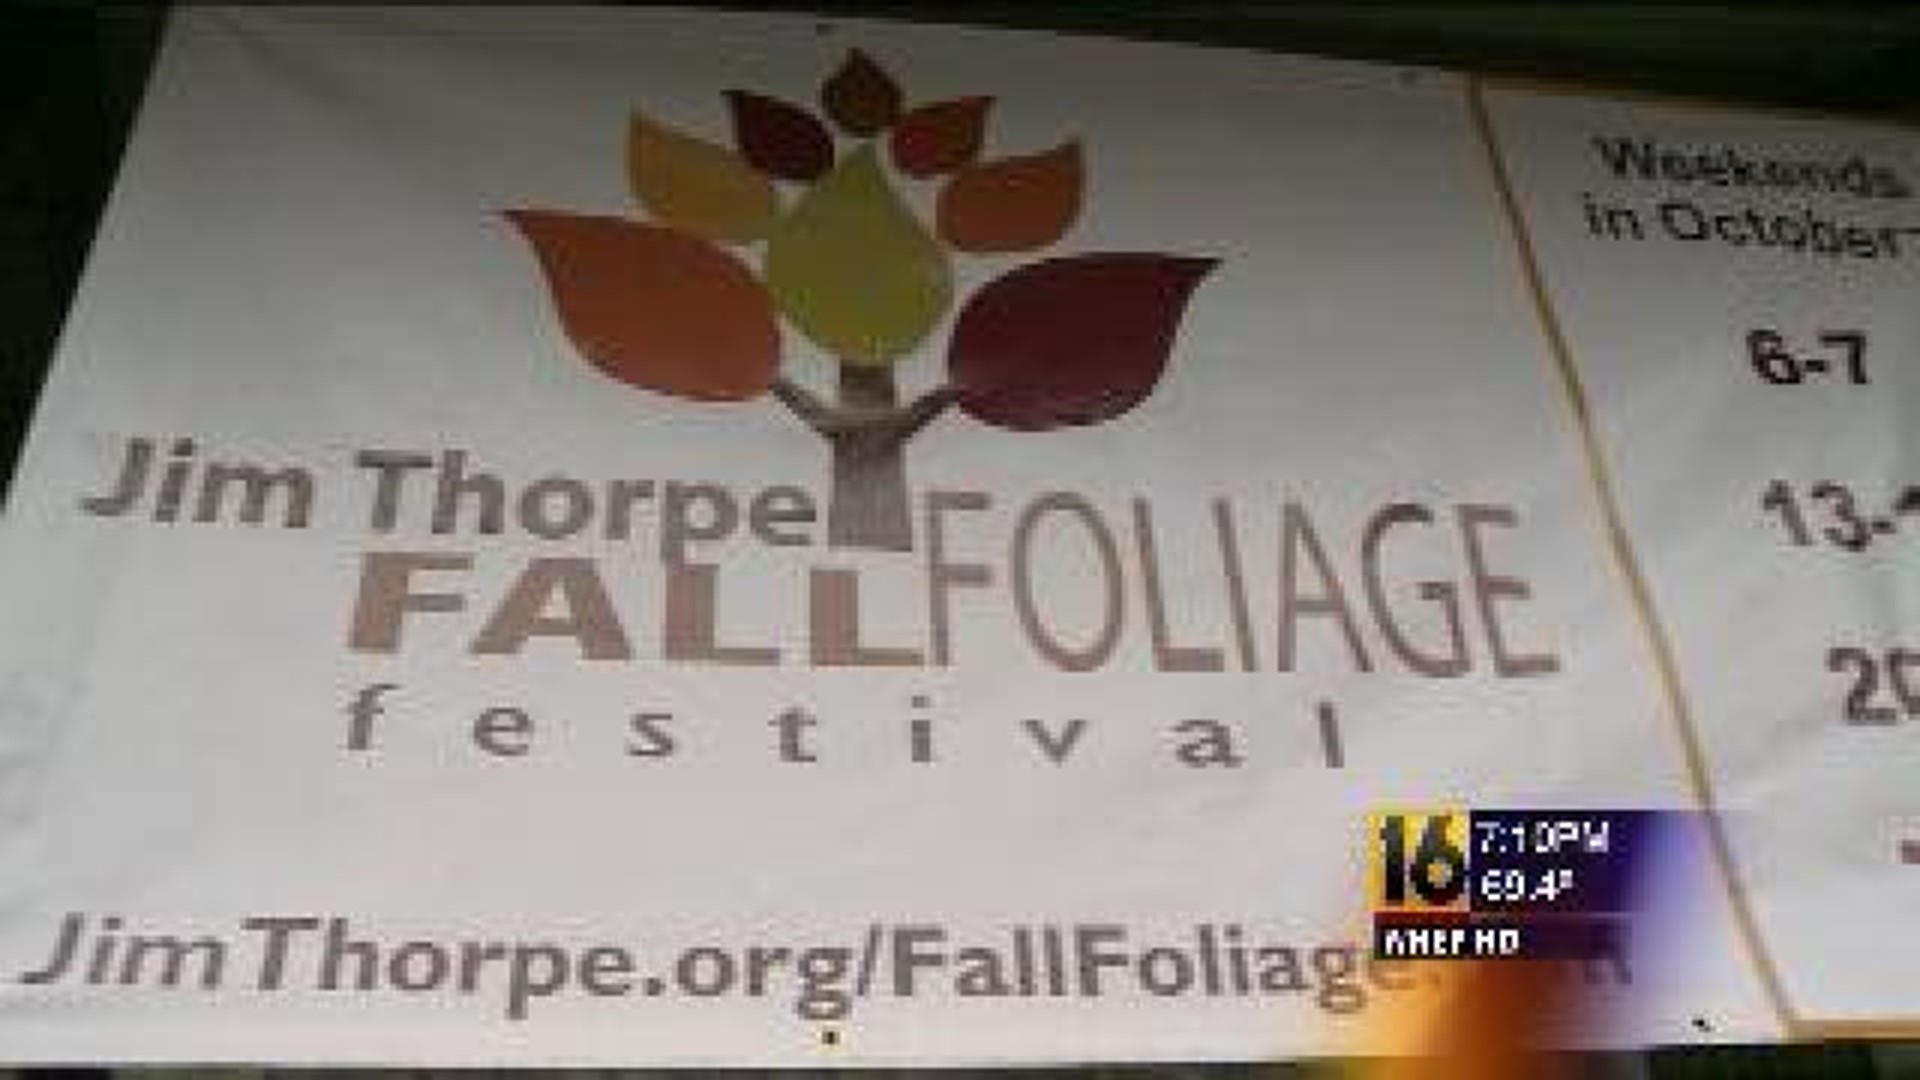 Fall Foliage Festival in Jim Thorpe